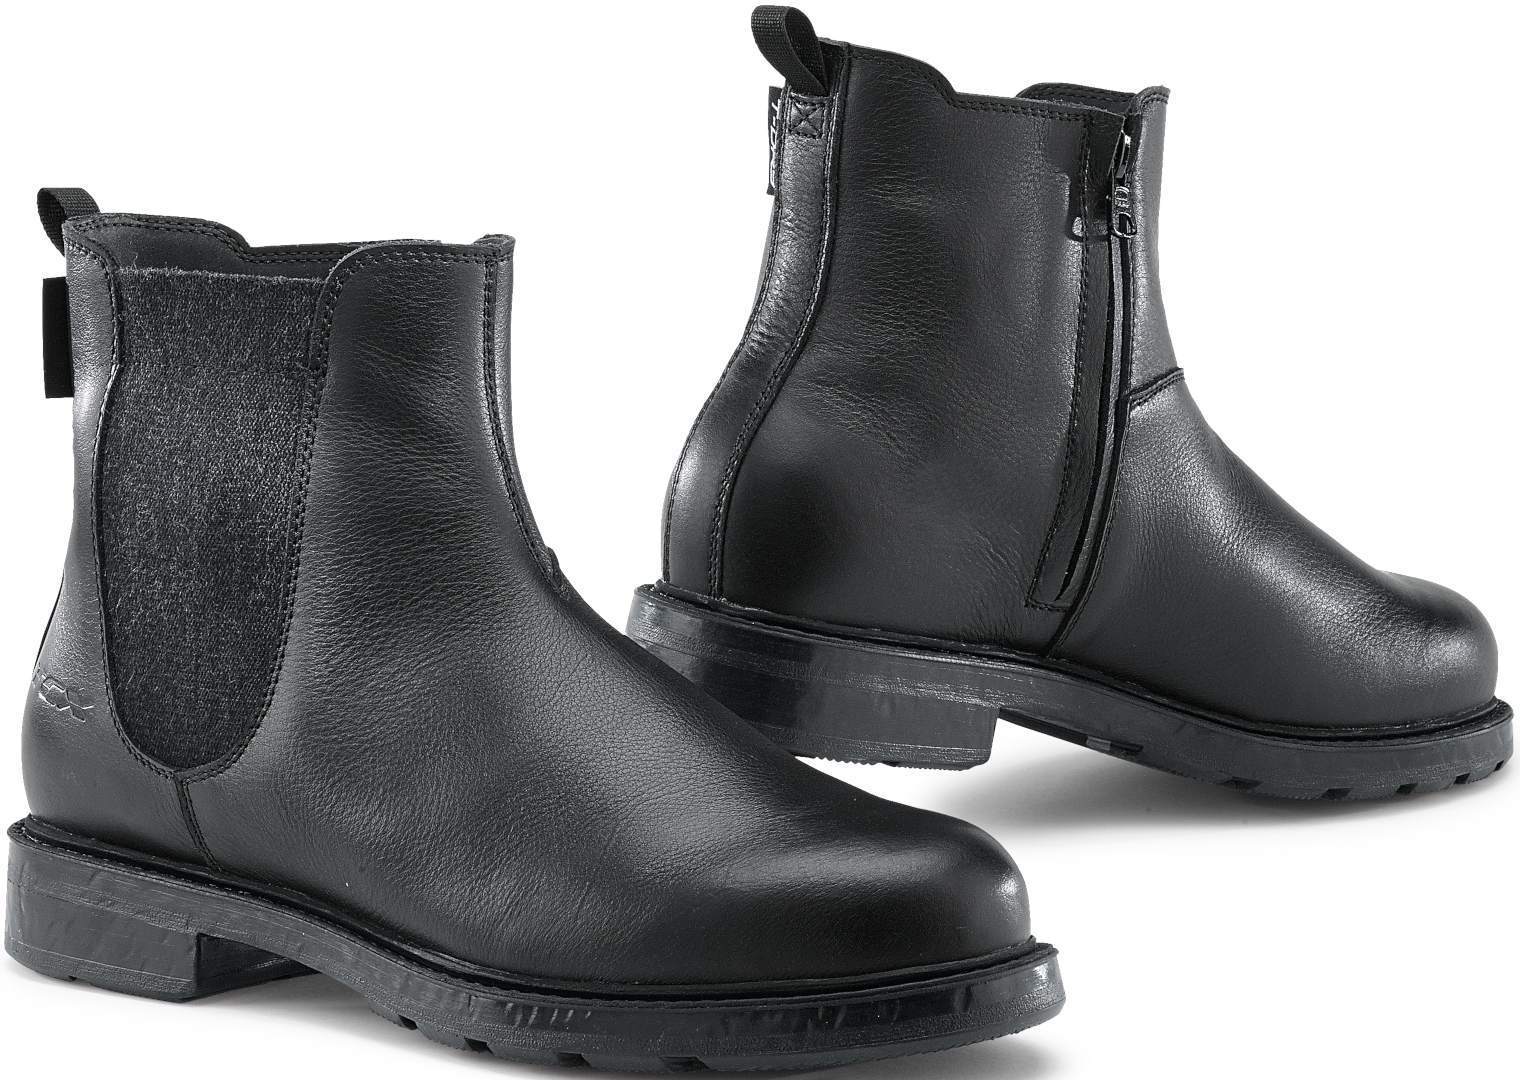 TCX Staten Zapatos de moto impermeables - Negro Gris (46)